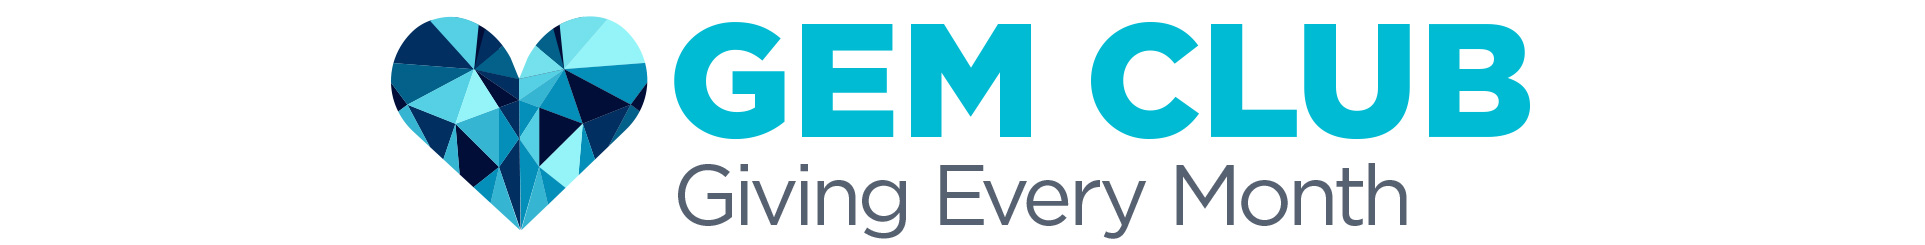 GEM Club logo